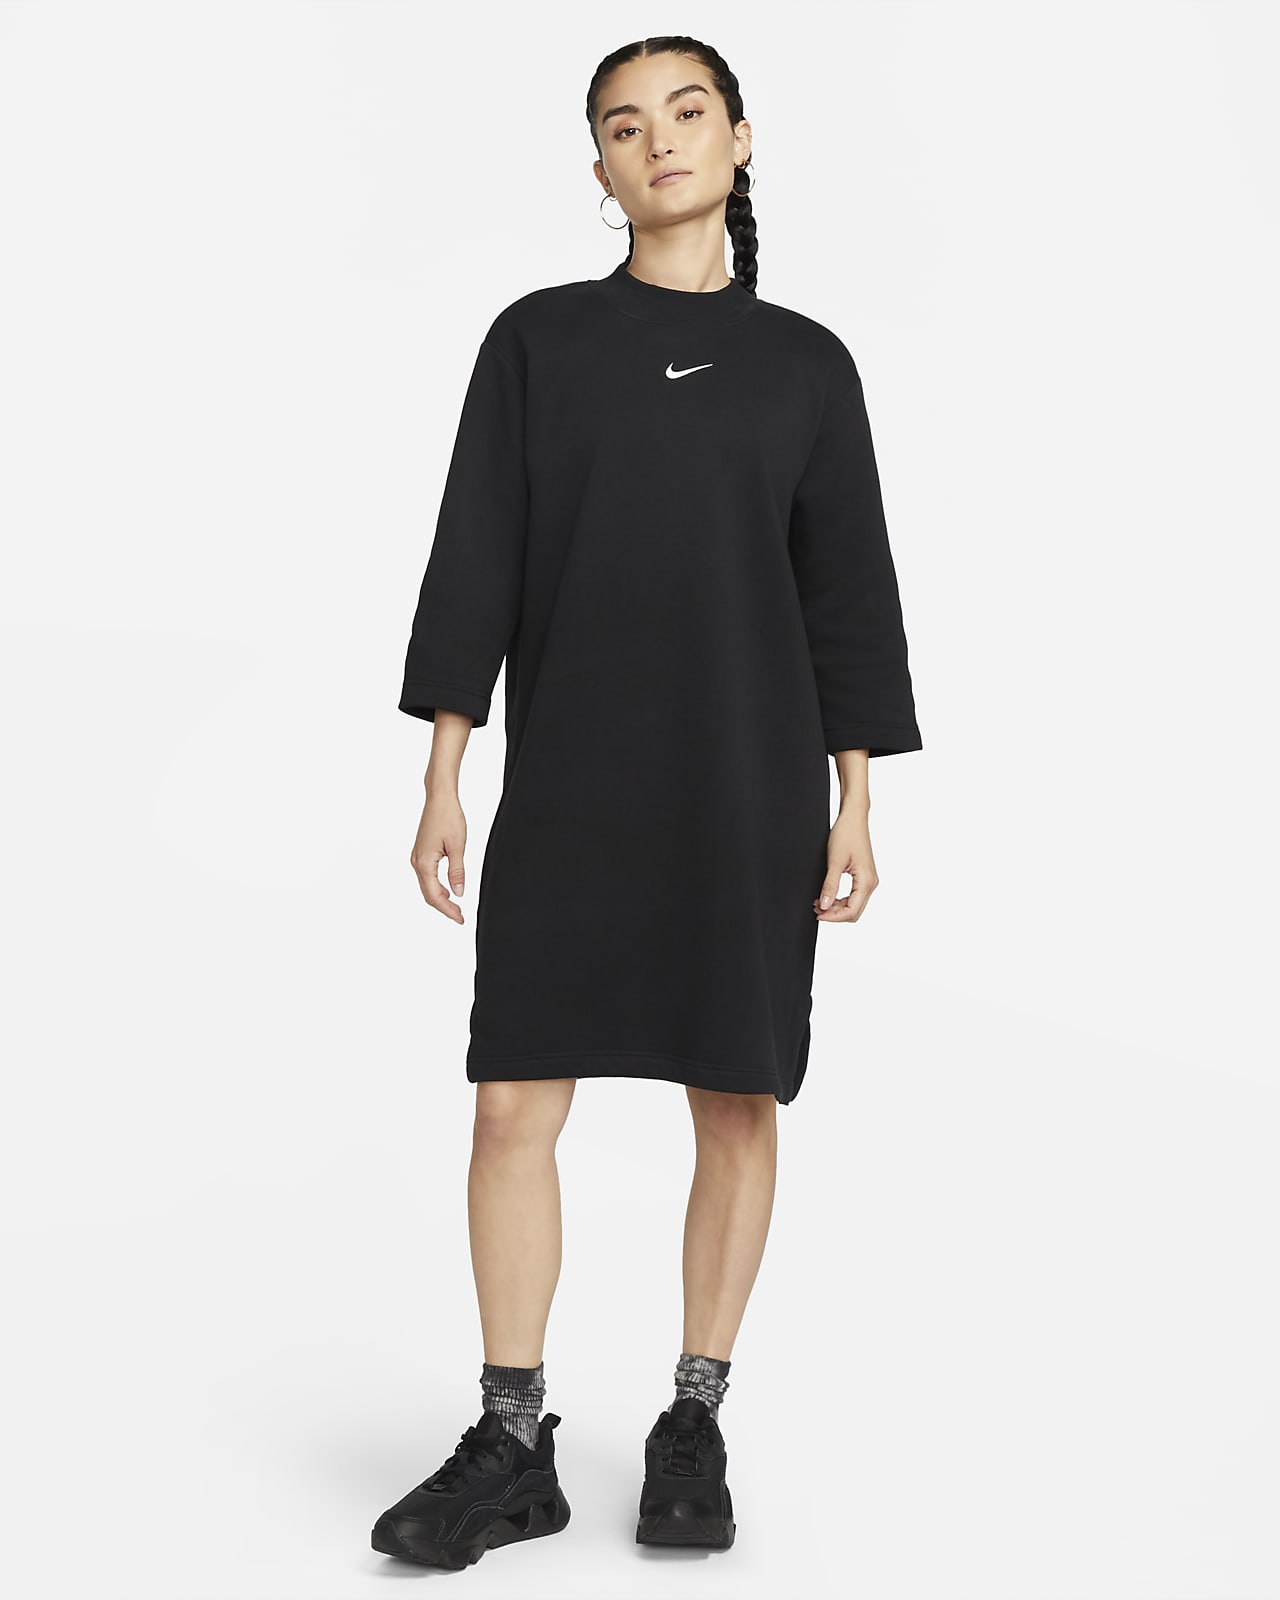 Manifest undskylde 鍔 Overdimensioneret Nike Sportswear Phoenix-kjole i fleece med 3/4-lange  ærmer til kvinder. Nike DK